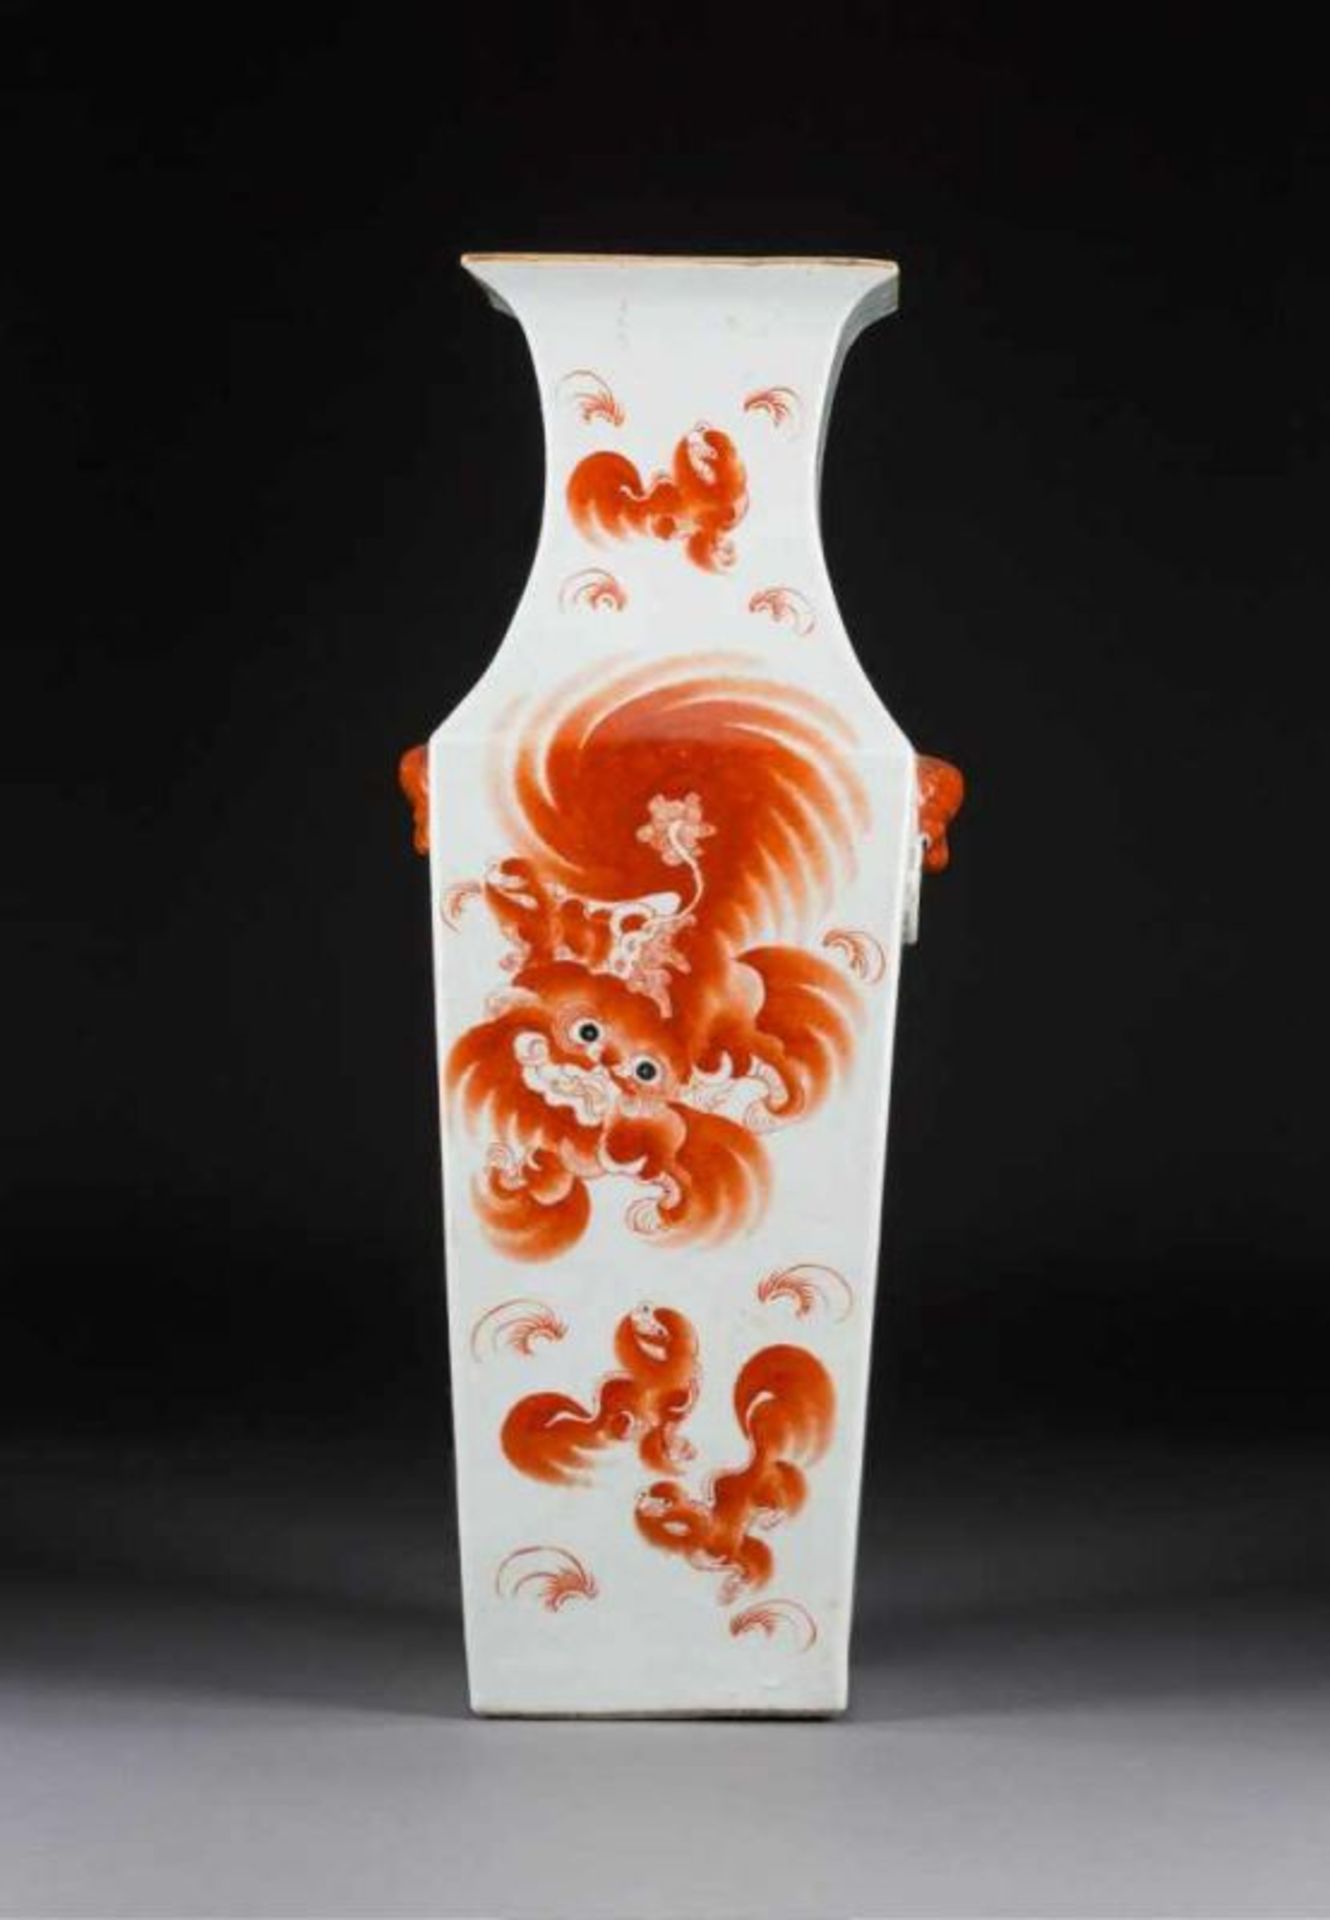 FEINE VIERECKIGE BODENVASE China, um 1900 Porzellan, polychrome Aufglasurbemalung. H. 56,2 cm. Mit